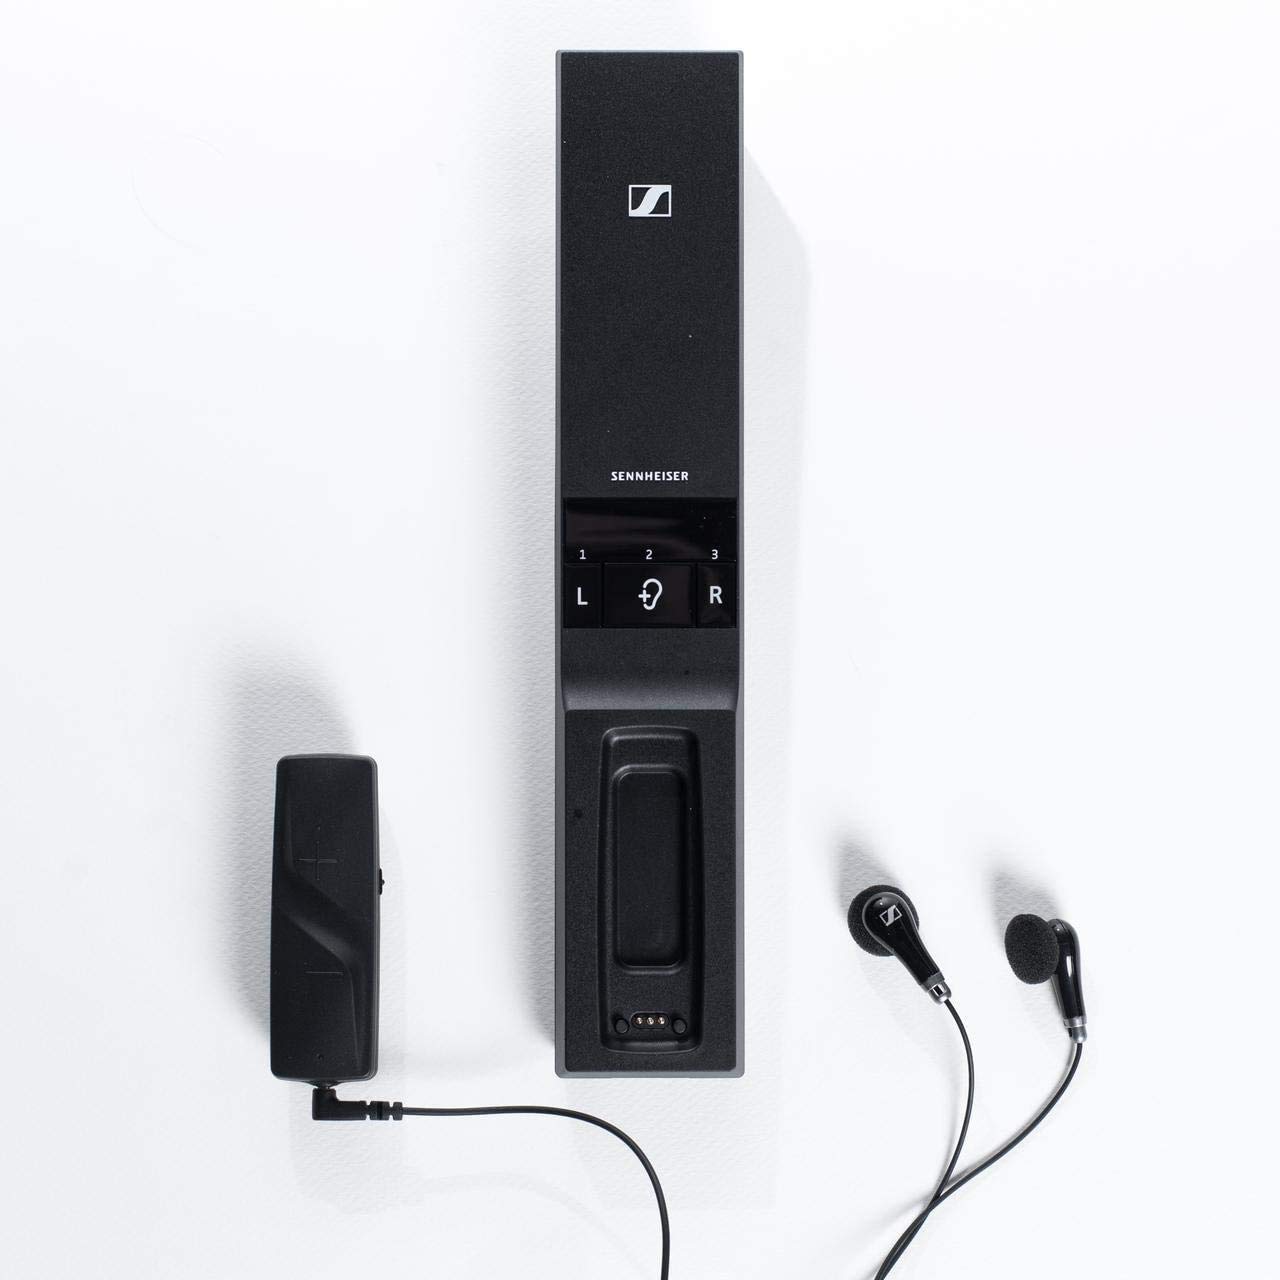 Sennheiser Consumer Audio Fone de ouvido digital sem fio Flex 5000 para ouvir TV - preto